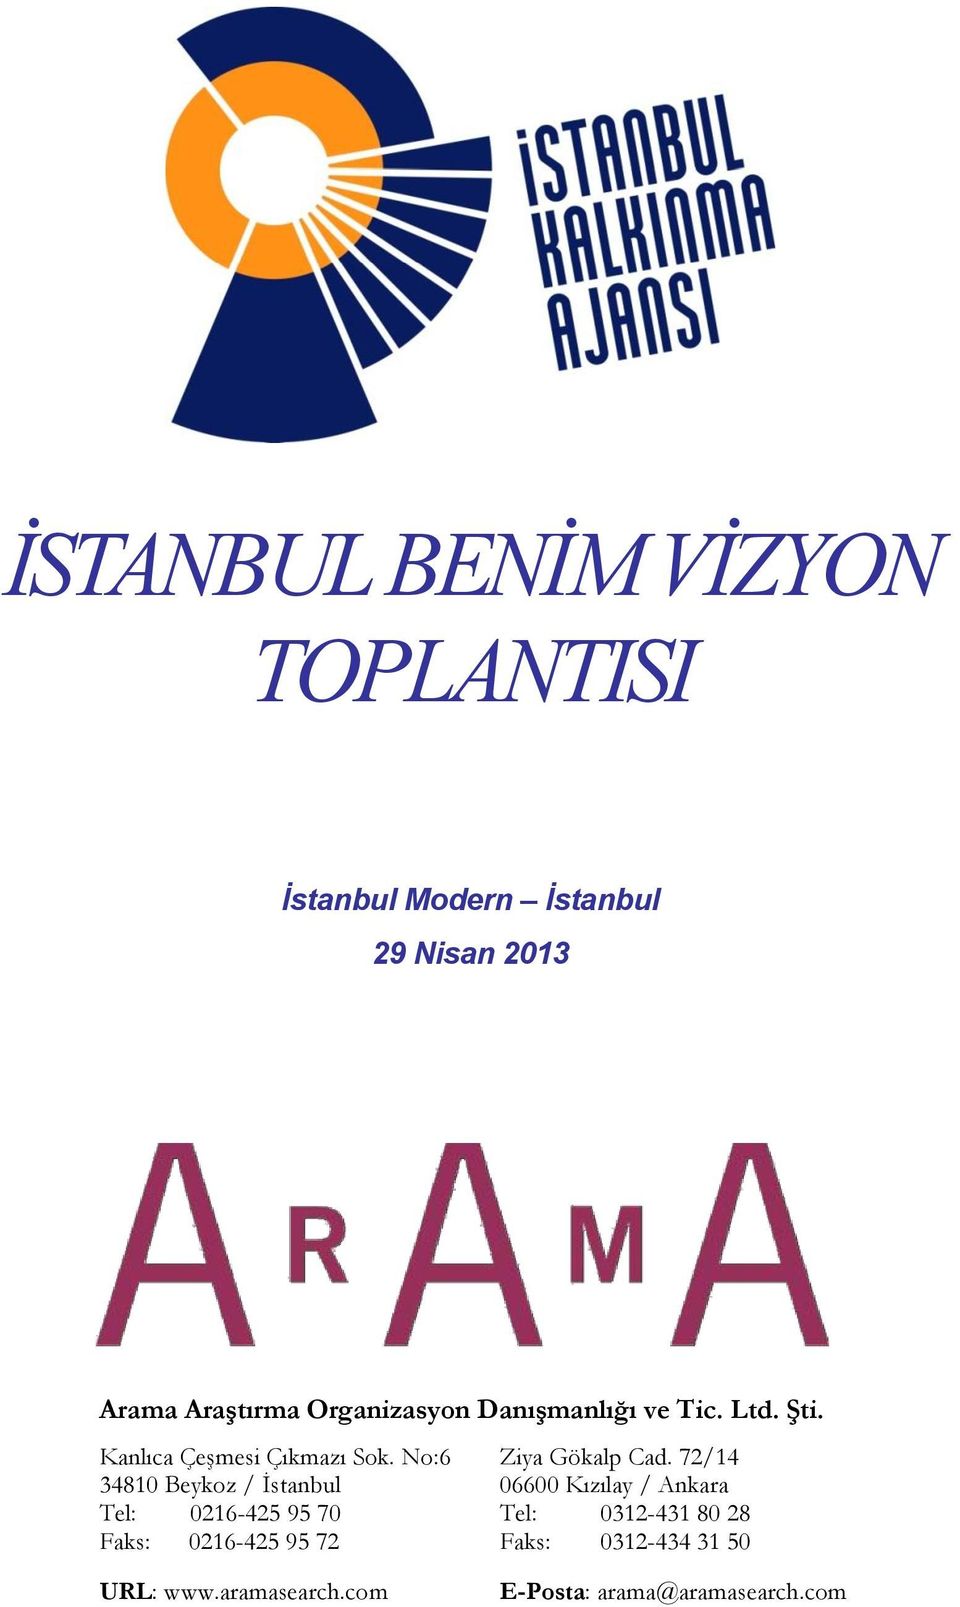 No:6 34810 Beykoz / İstanbul Tel: 0216-425 95 70 Faks: 0216-425 95 72 URL: www.aramasearch.